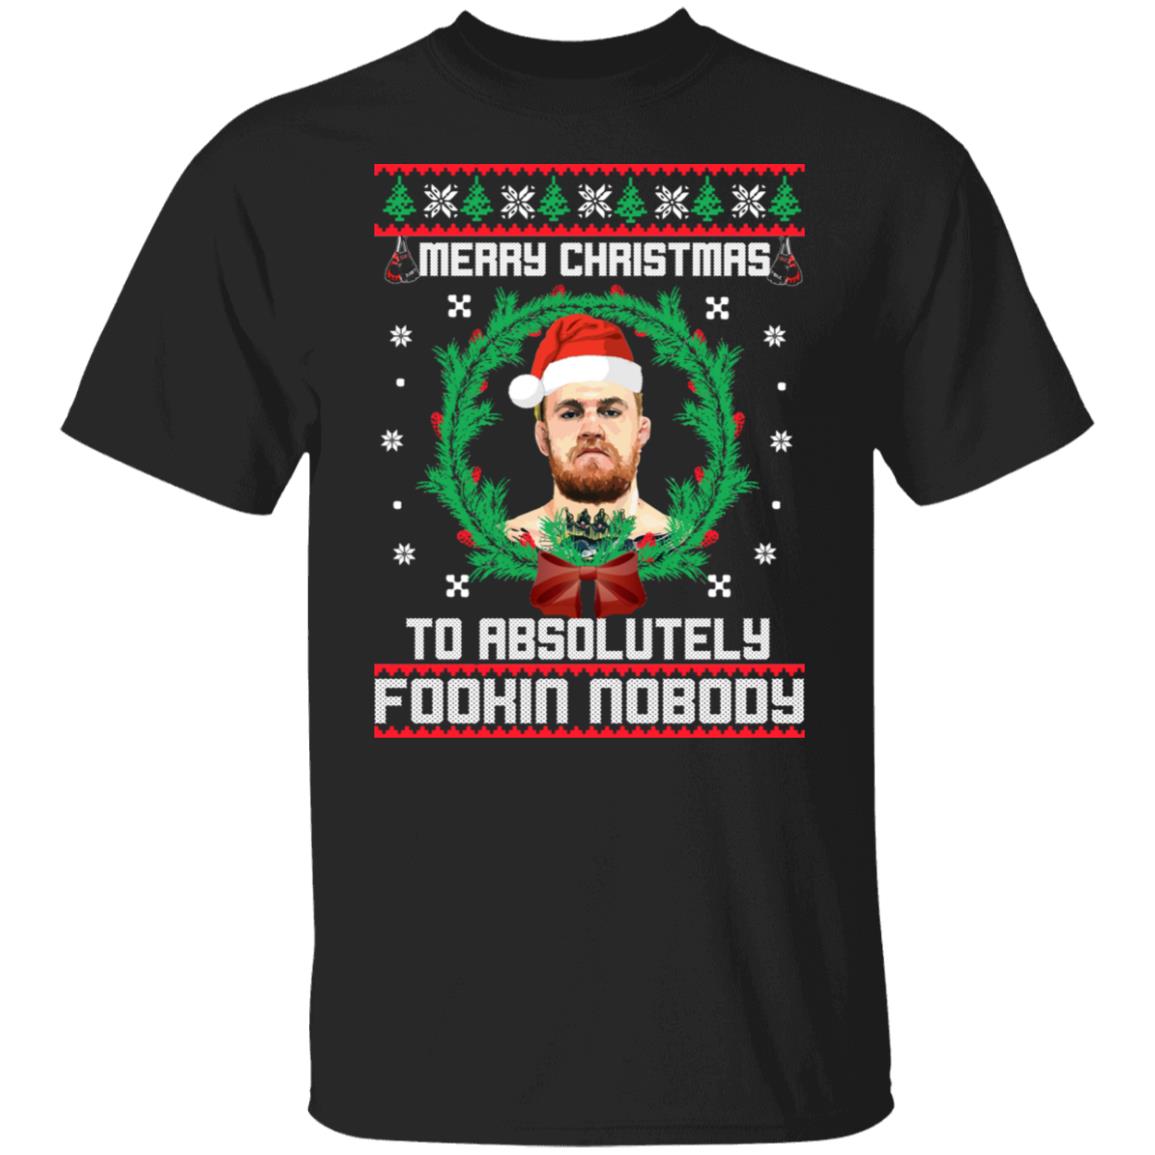 Merry Christnas to Absolutely Fookin’ Nobody Conor McGregor Santa Claus Christmas Sweatshirt Hoodie Ladie Short Sleeve T Shirt Long Sleeve Short Sleeve